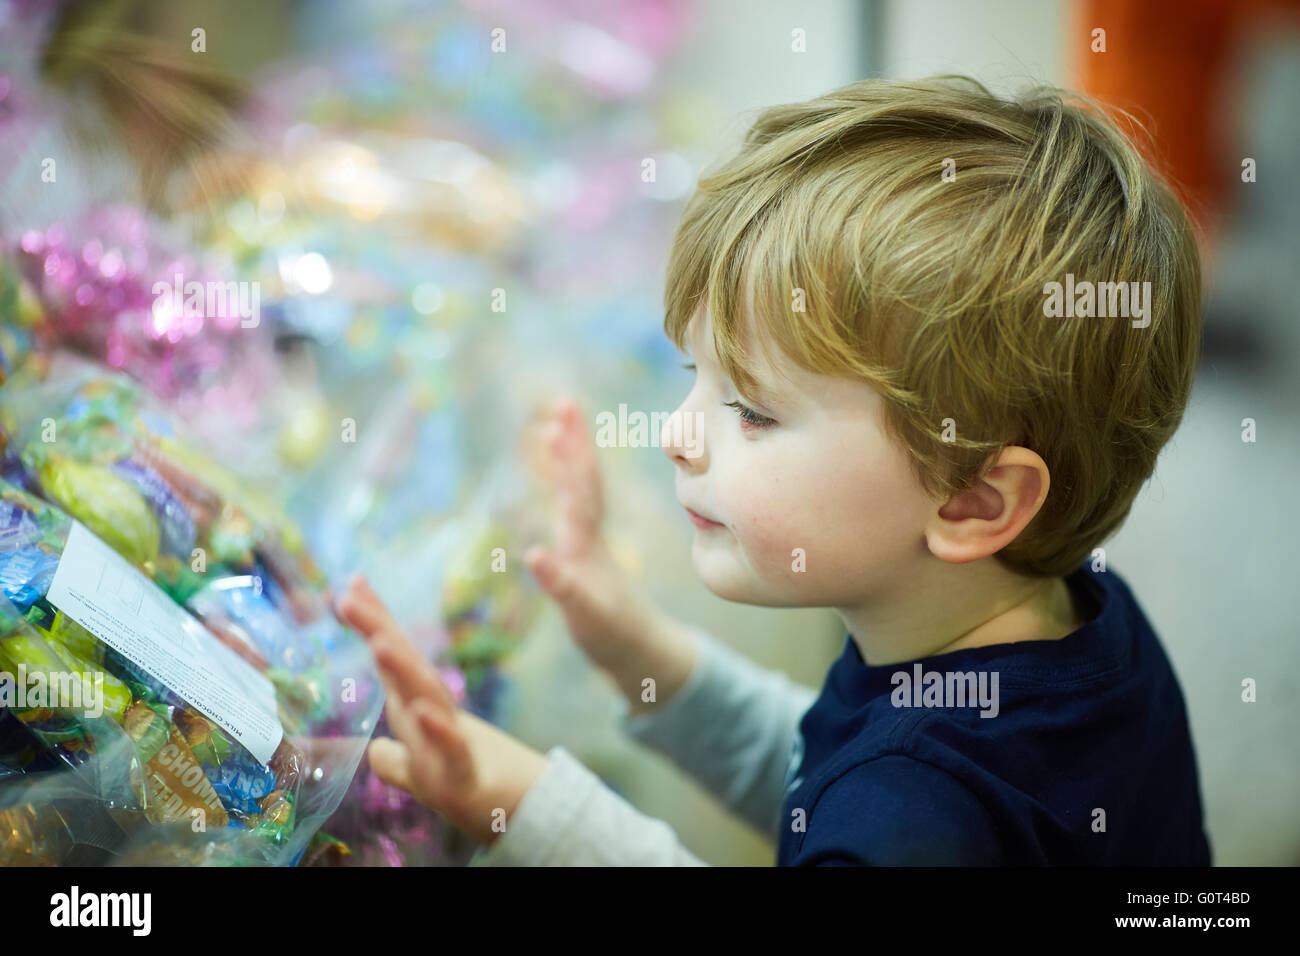 Kleiner Junge auf der Suche nach Süßigkeiten durch ein Schaufenster Anzeige Gesundheit Zucker Schokolade, Taschengeld kaufen Käufer belästigen, Candy Stockfoto